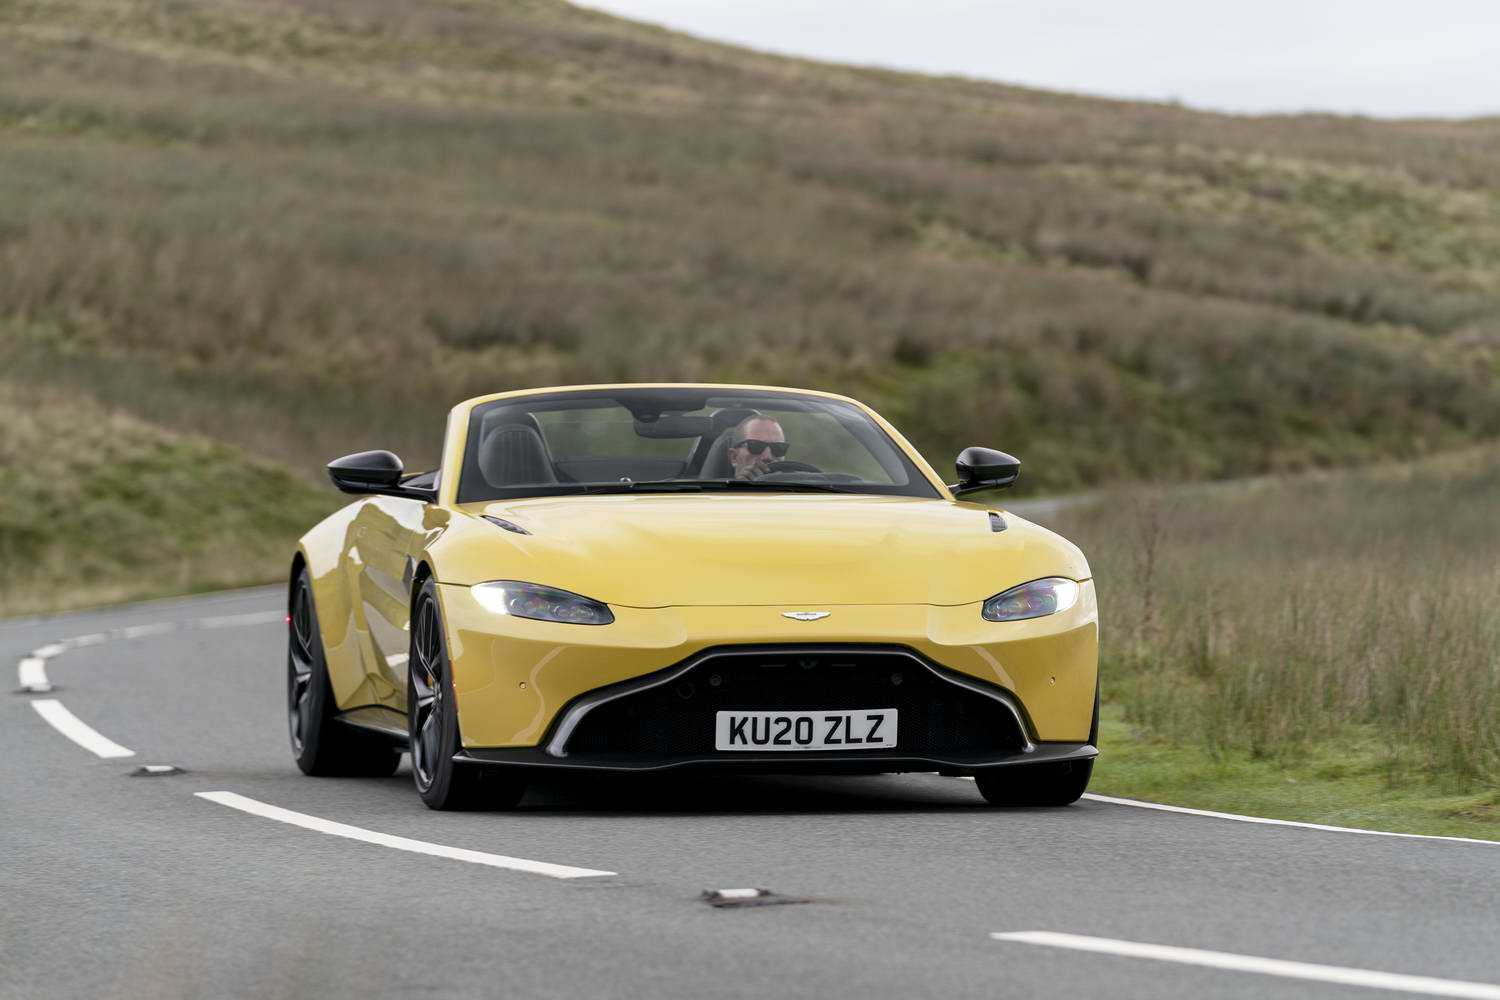 Aston martin v12 vantage s roadster (2015) › характеристики, описание, видео и фото астон мартин в12 виндаж с родстер › autozov.ru